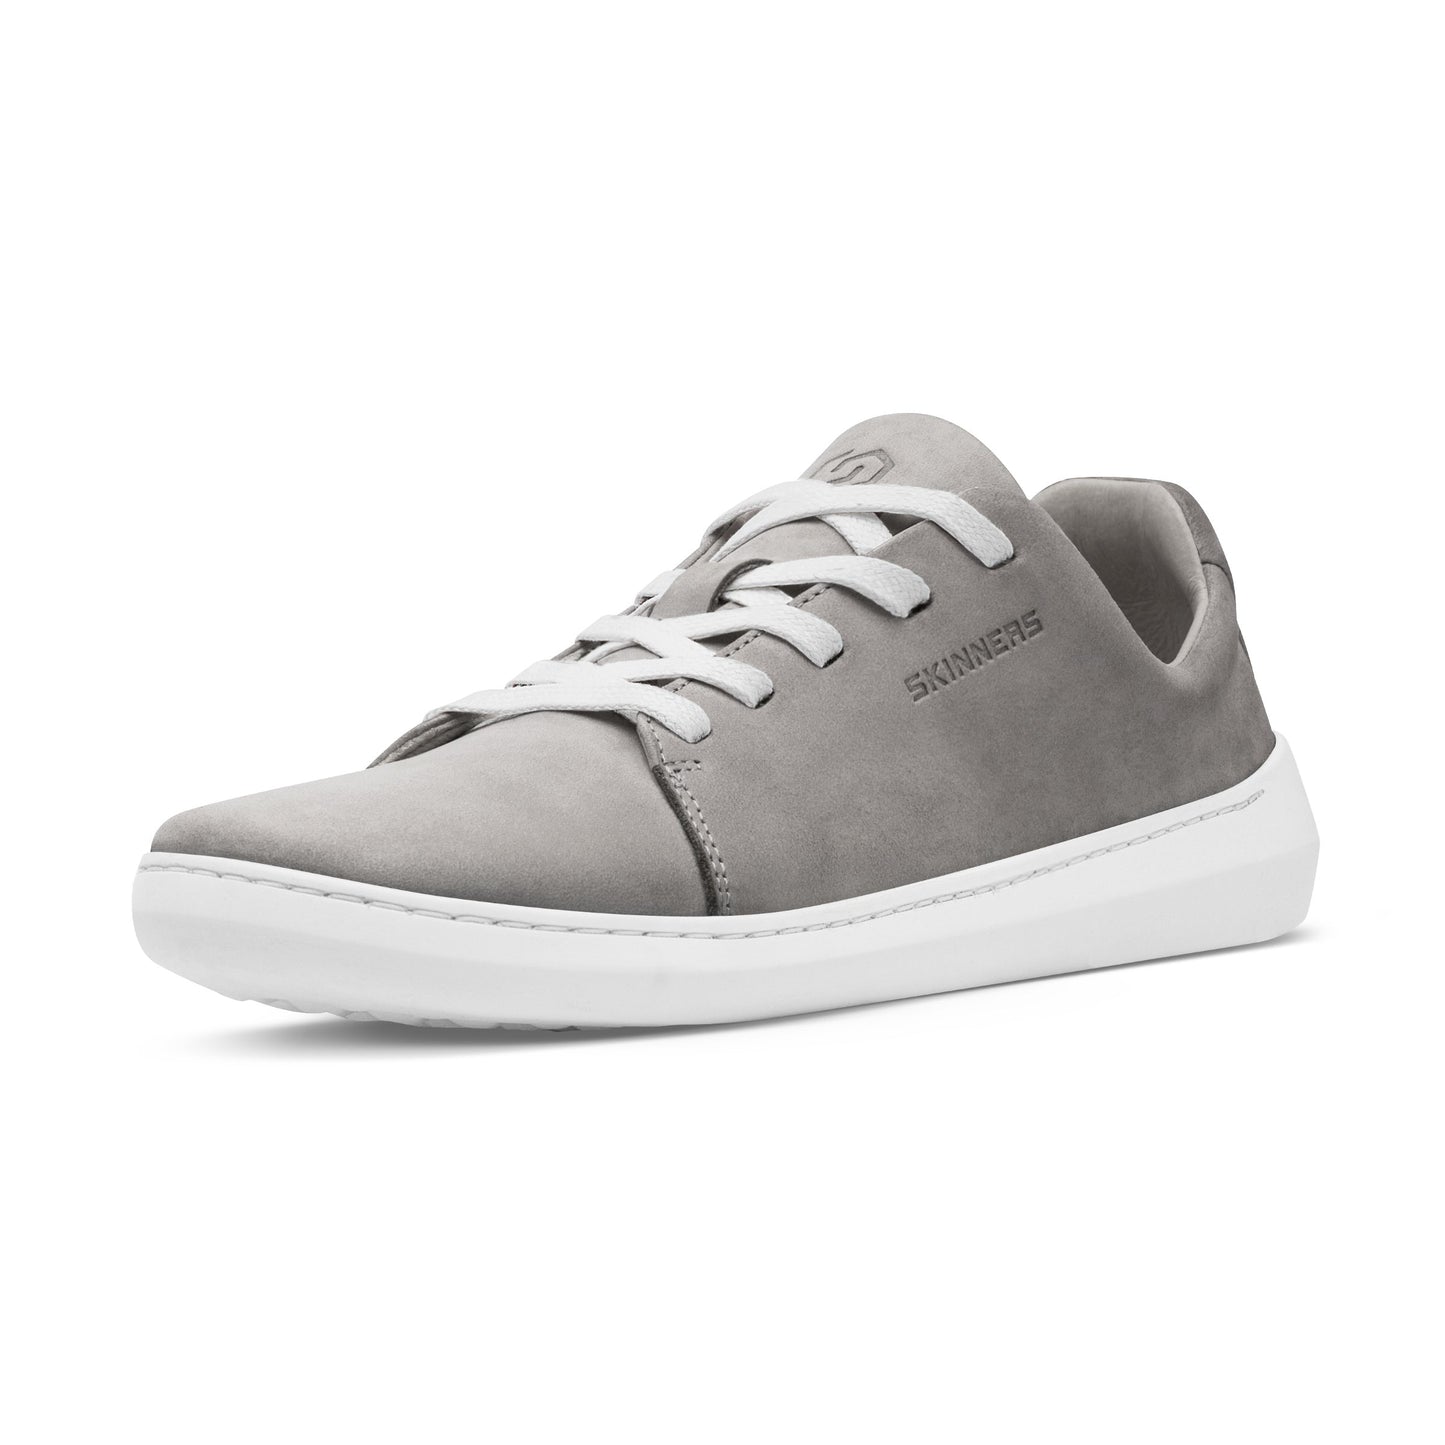 Mærkbare Walker barfods sneakers til kvinder og mænd i farven grey / white, vinklet